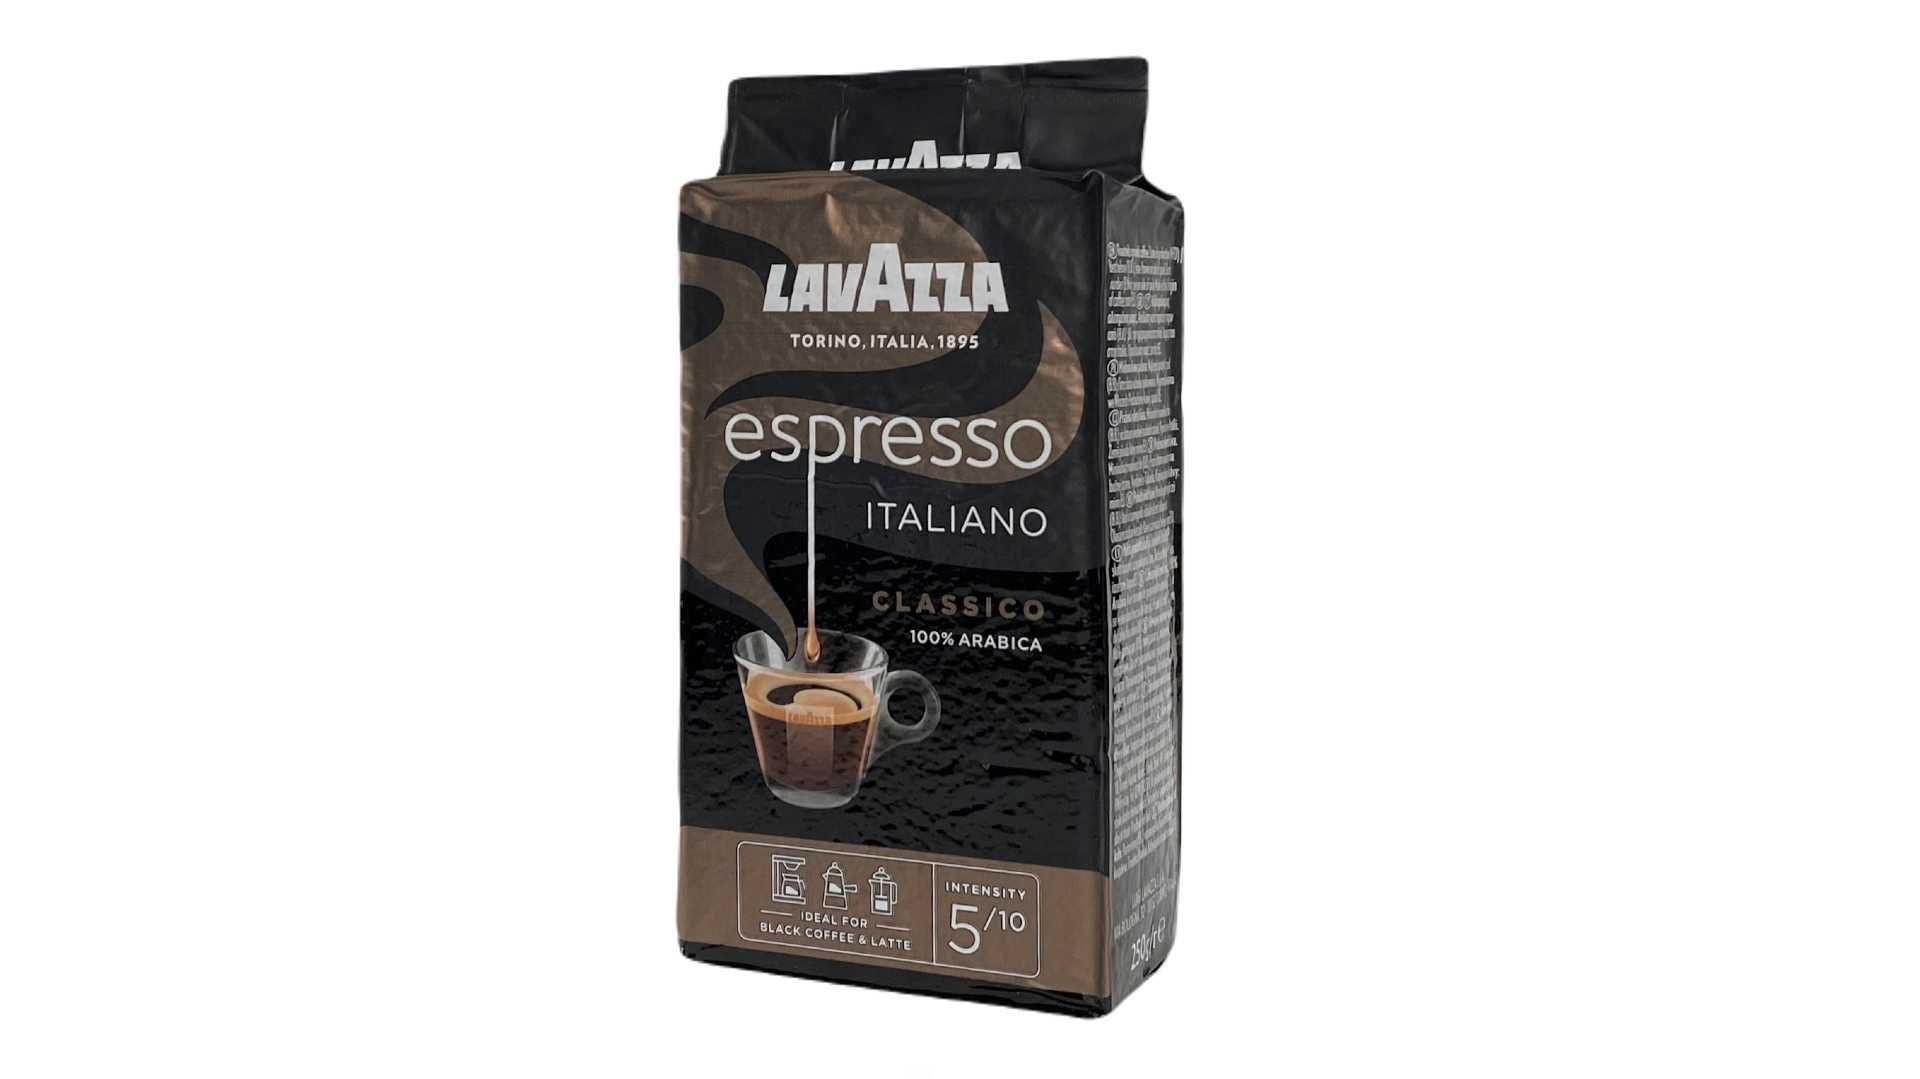 Кофе молотый lavazza 250 г. Lavazza Espresso italiano Classico, 250 г. Кофе Lavazza молотый Espresso 250. Lavazza Espresso italiano Classico (Лавацца эспрессо итальяно Классико). Кофе Лавацца эспрессо молотый в/у 250г.